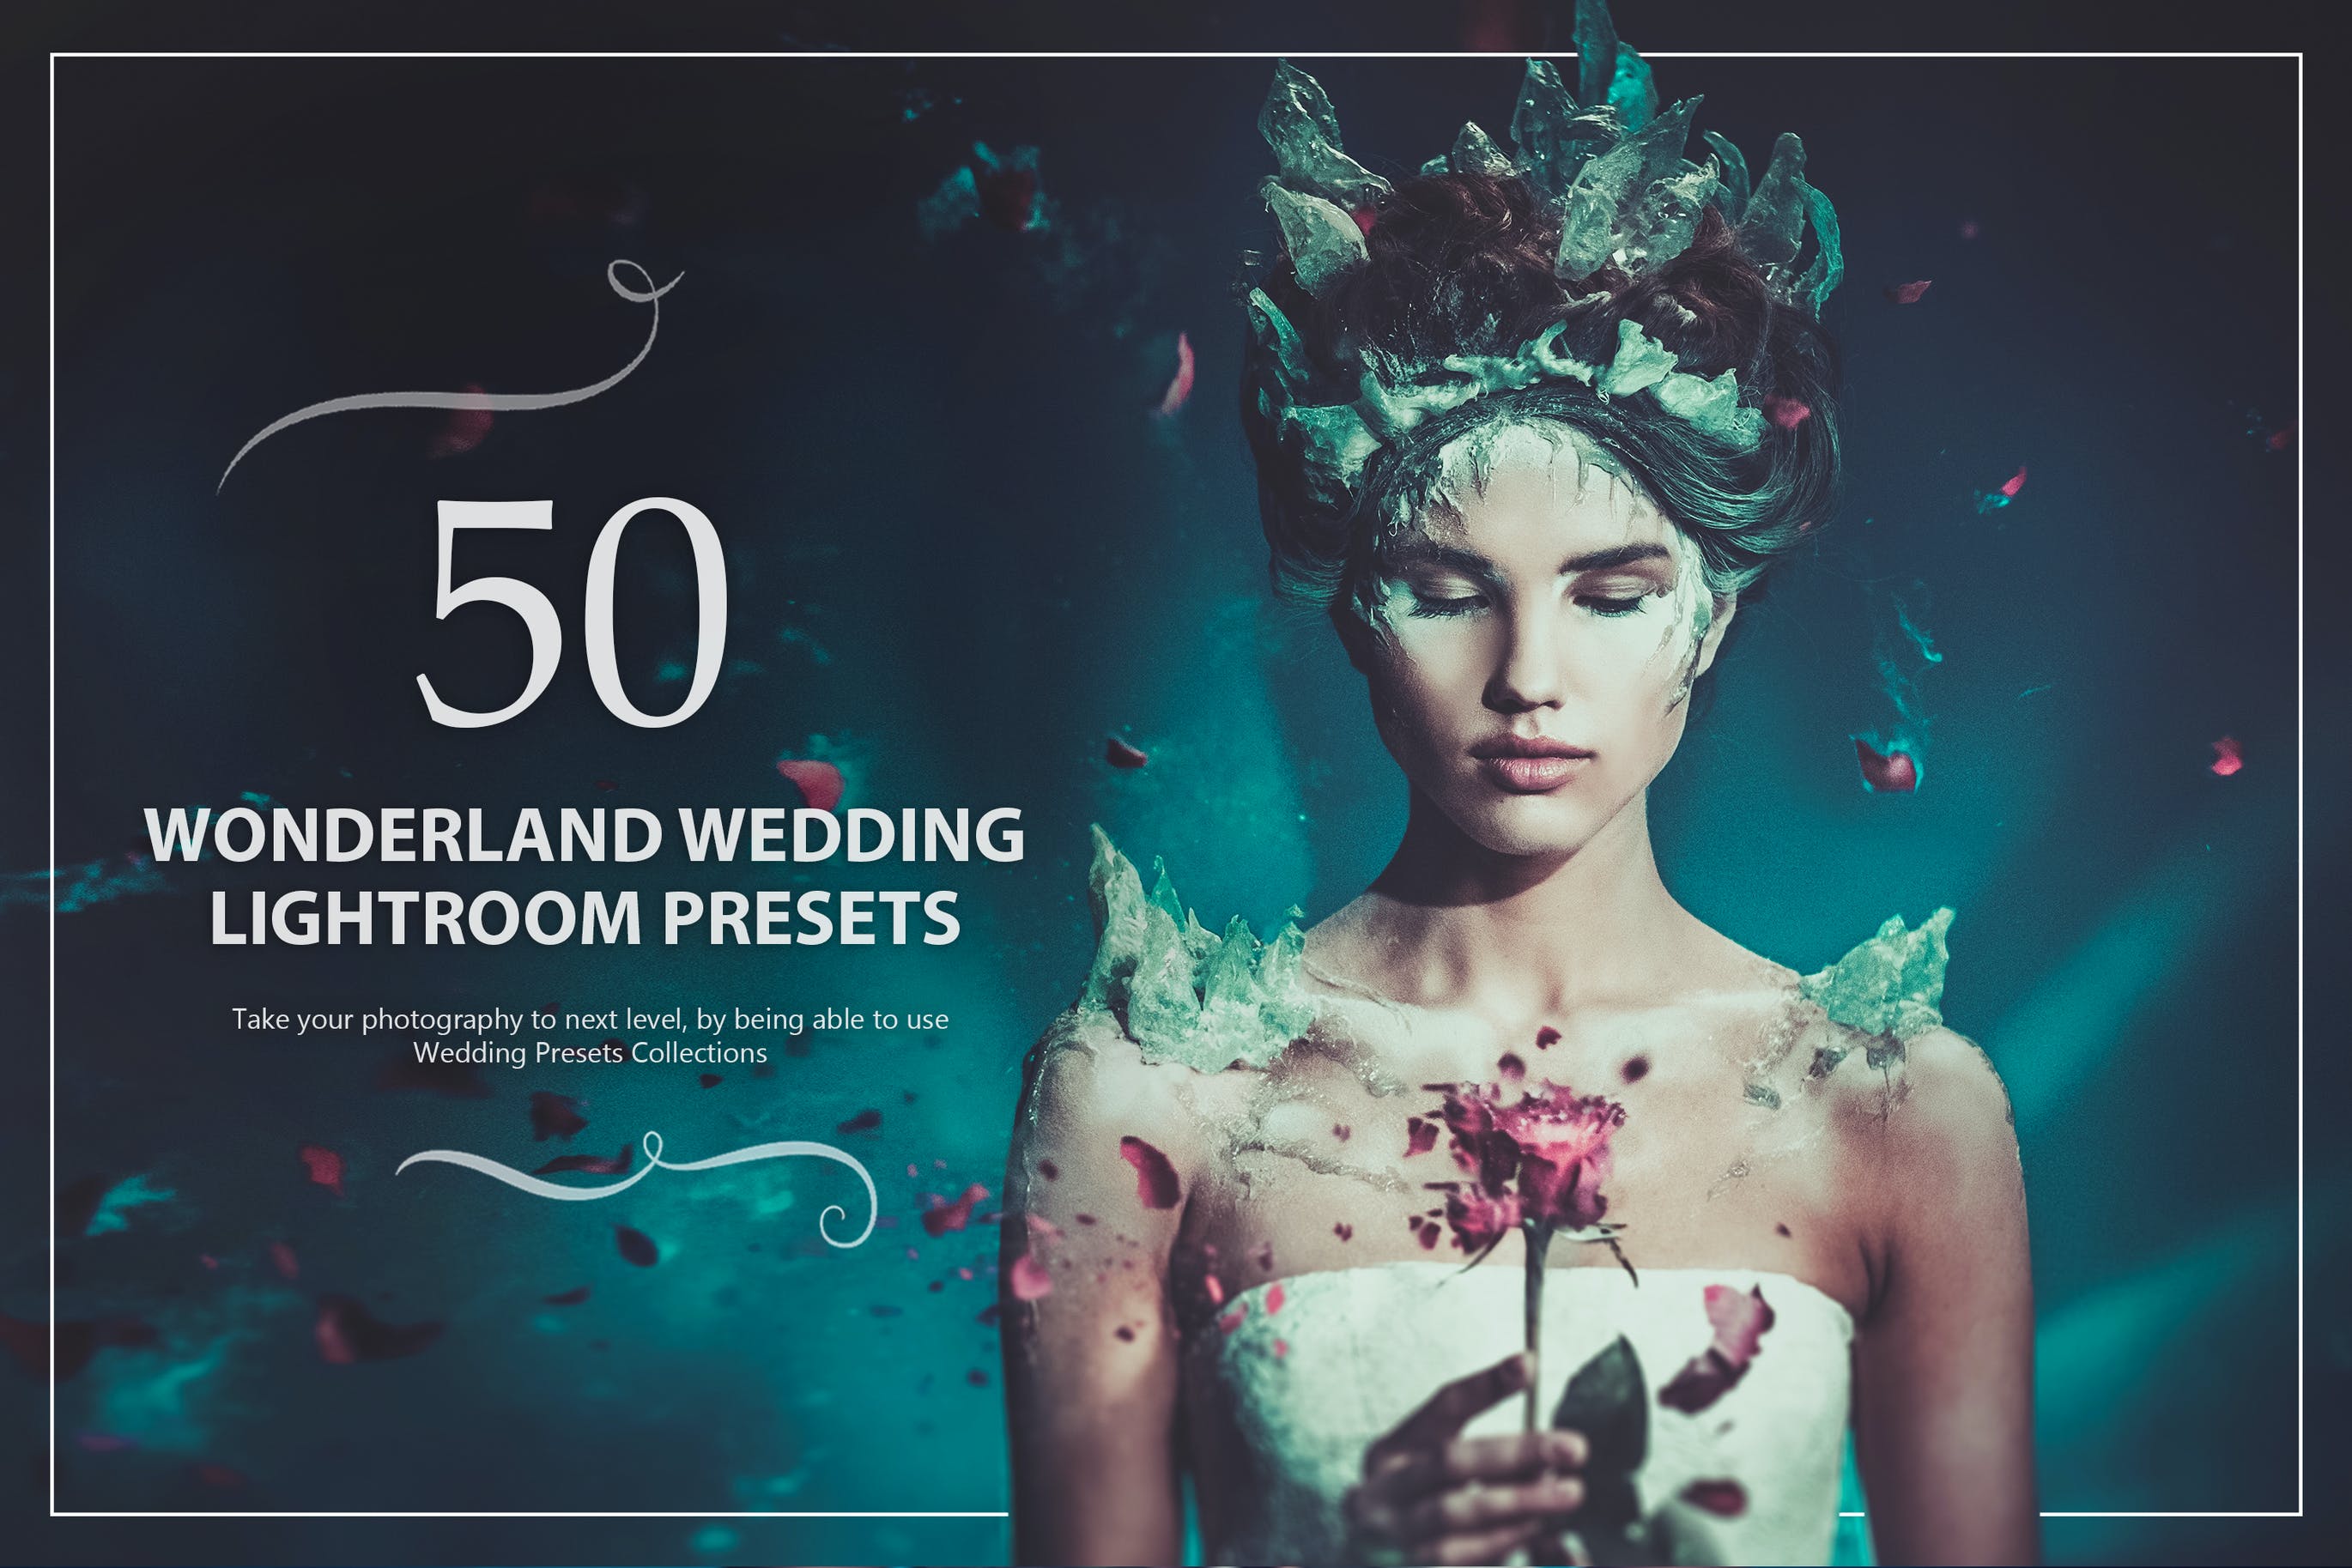 50款仙境婚礼照片后期调色Lightroom预设 50 Wonderland Wedding Lightroom Presets 插件预设 第1张